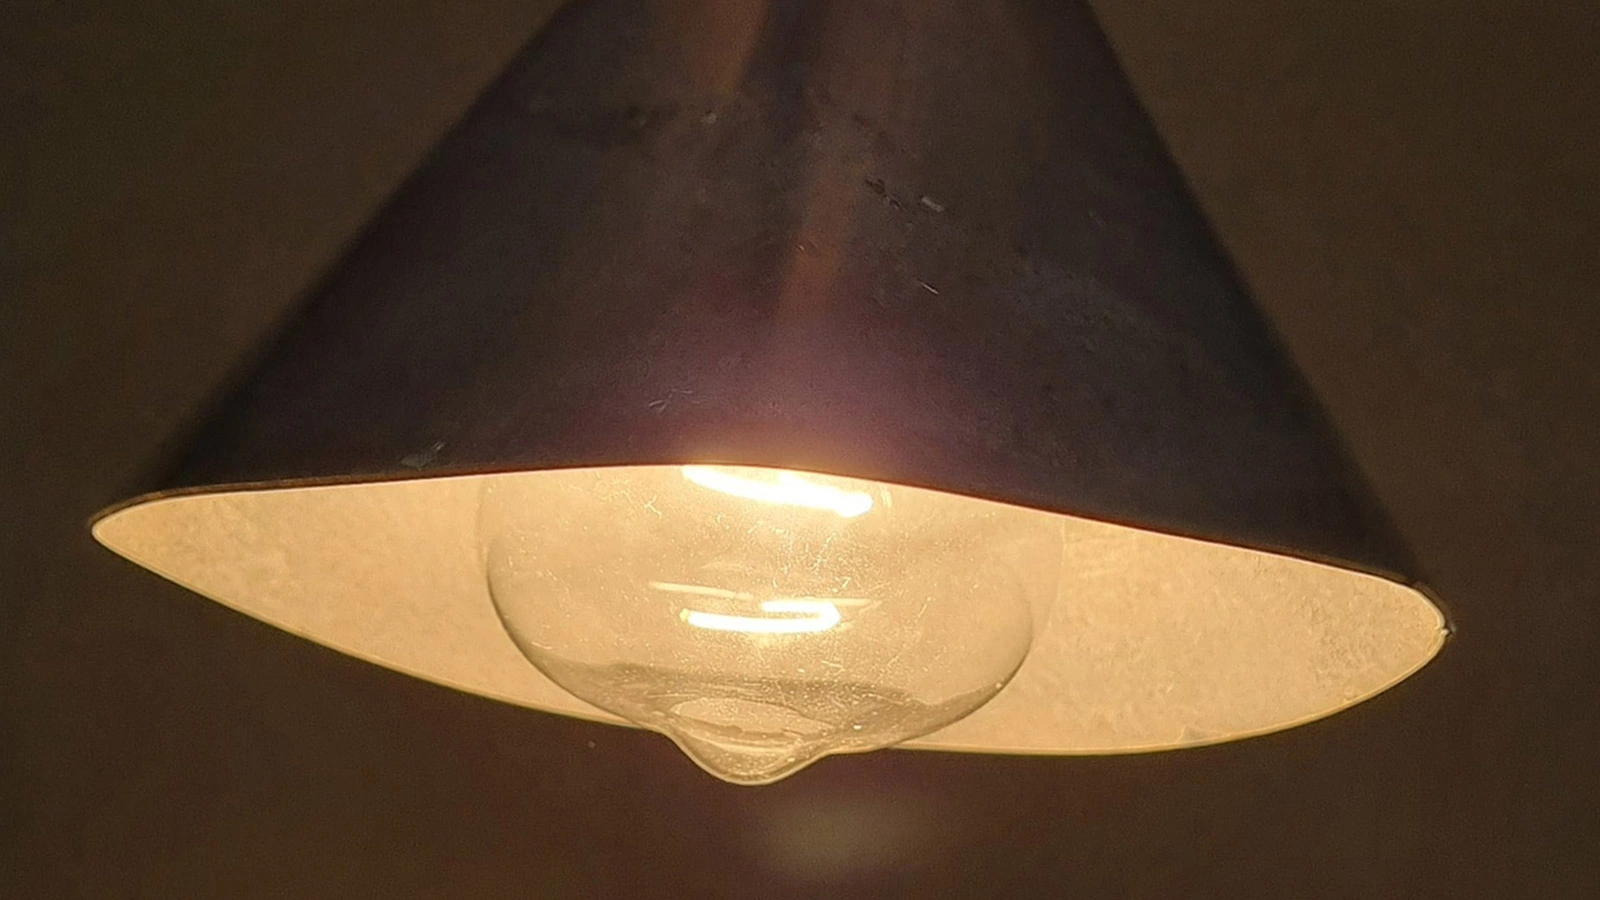 <p>Абажур, покрытый катализатором, использует тепло от лампы накаливания для уничтожения загрязнения воздуха в помещении</p>